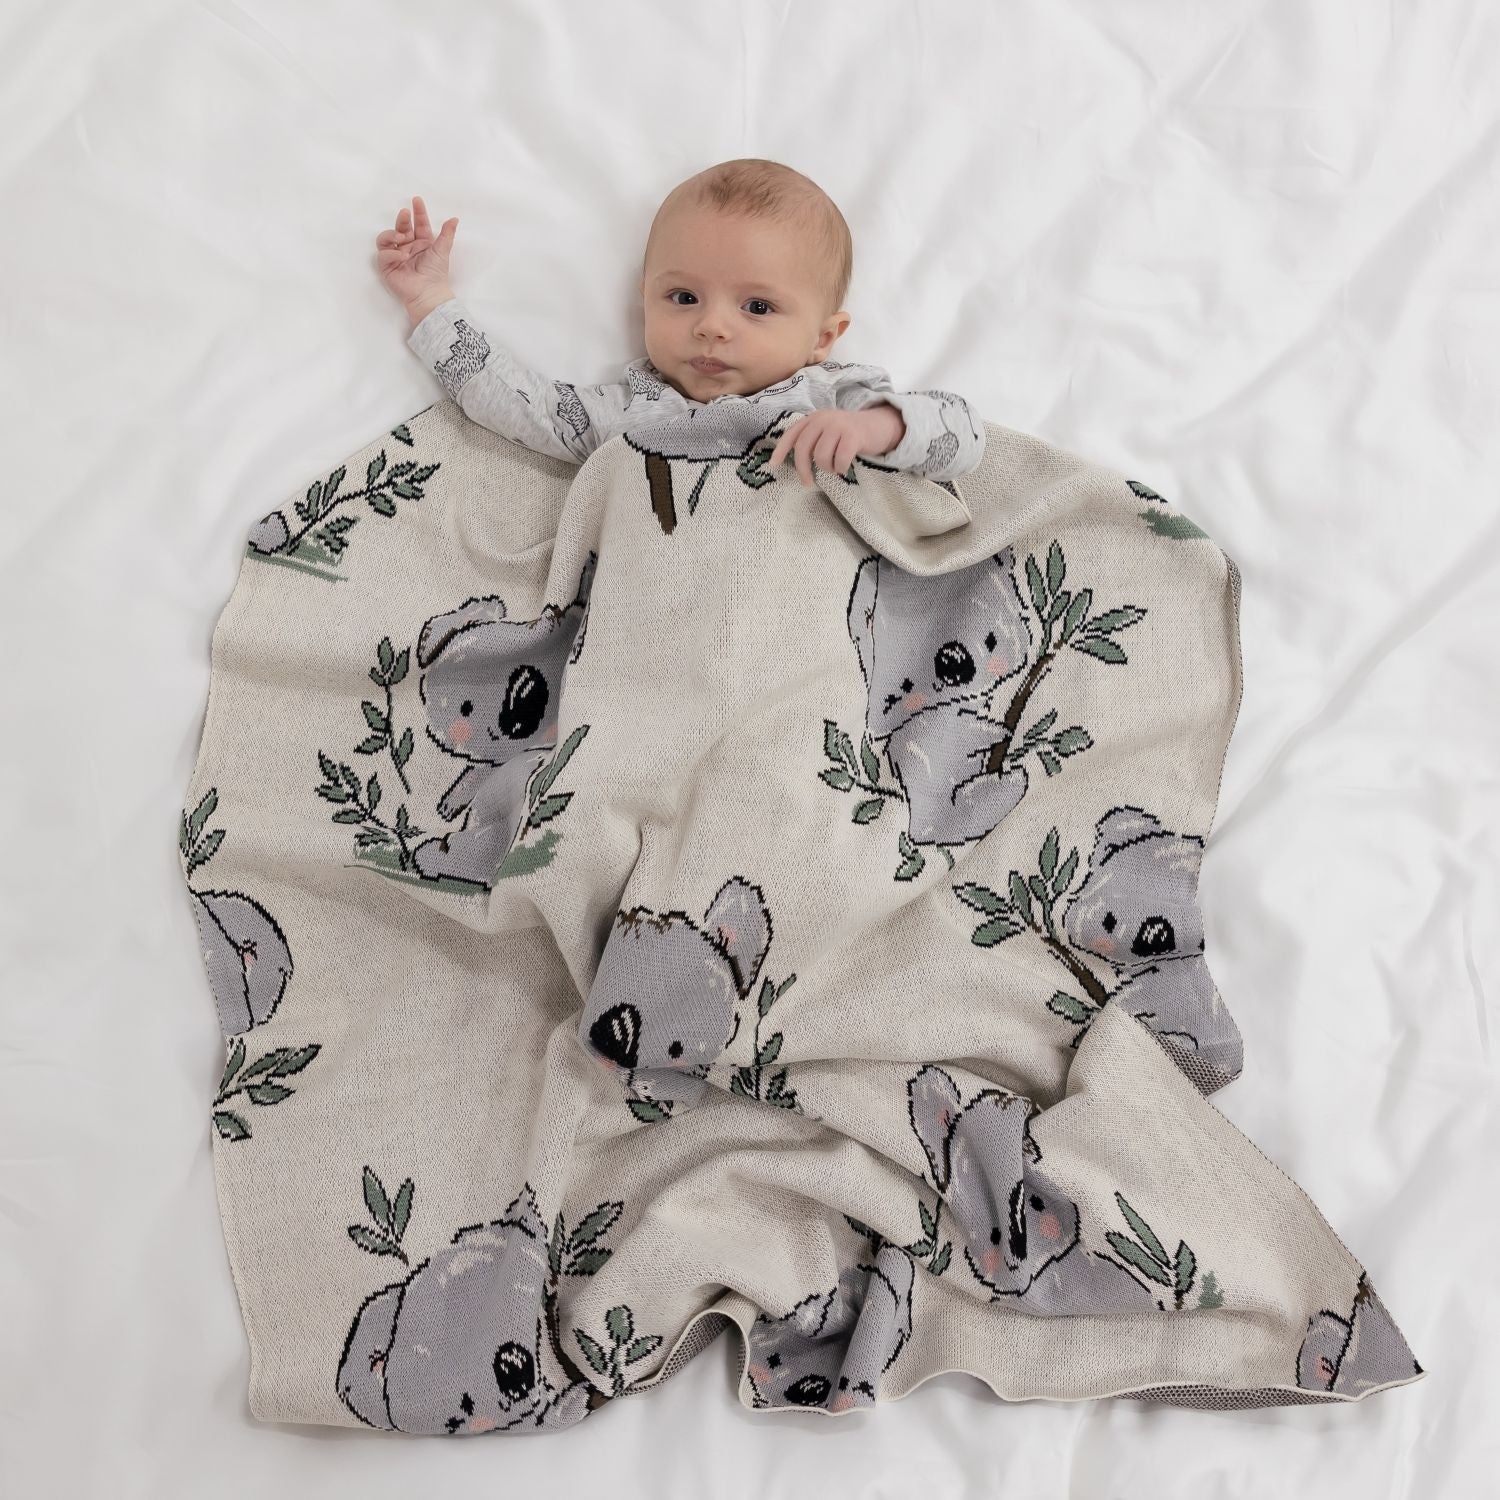 Di Lusso Living - Baby Blanket Tilly Koala